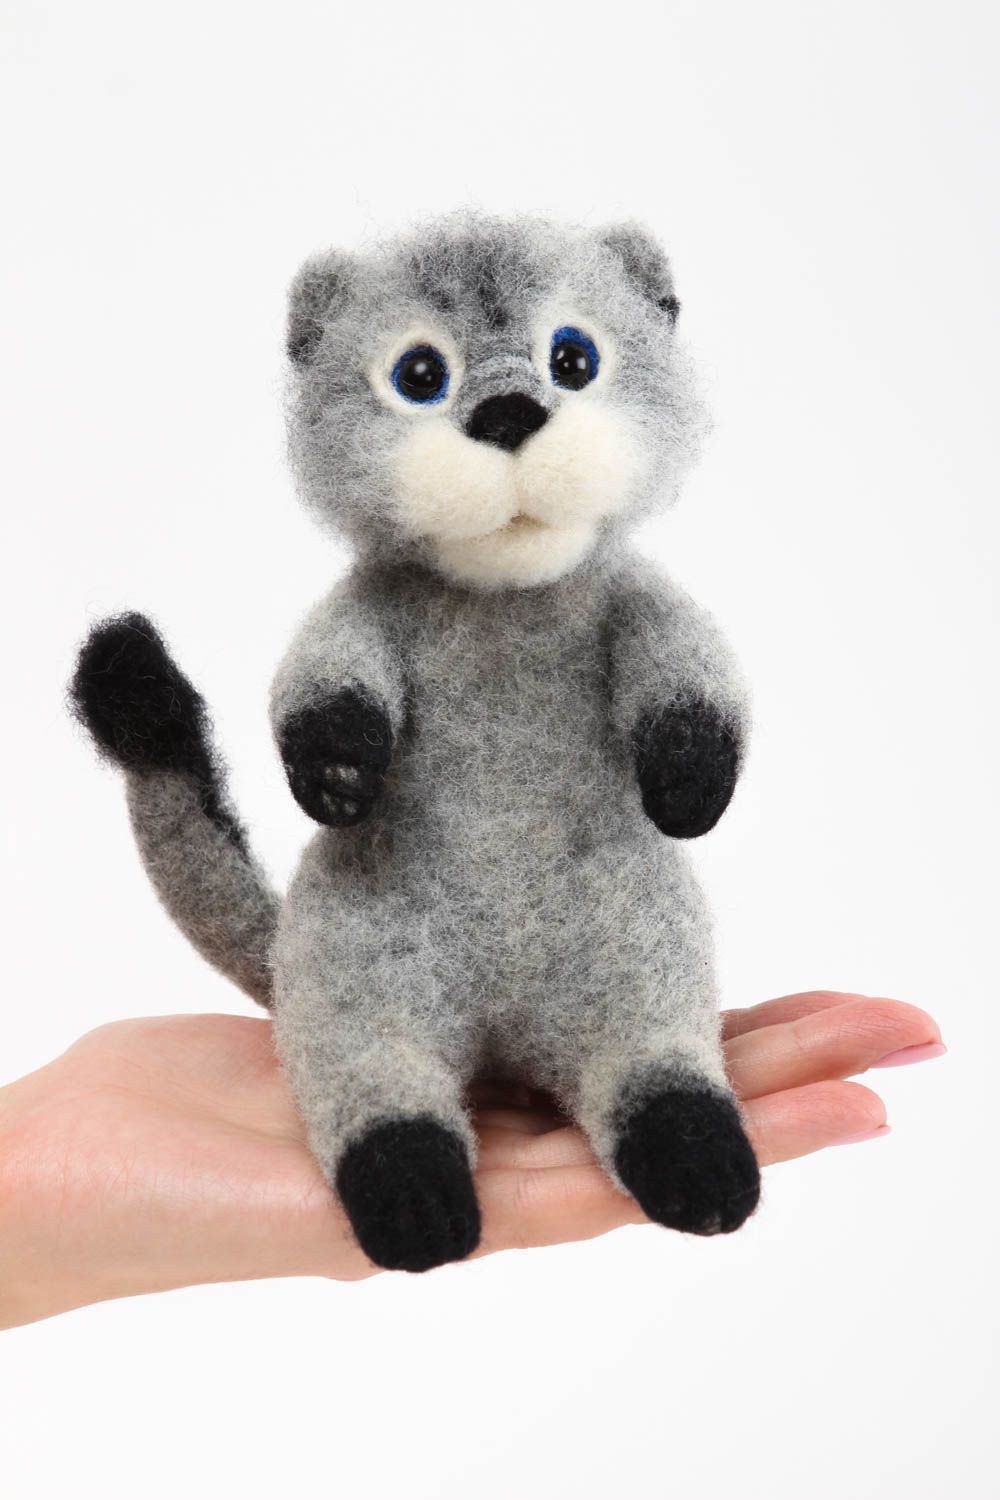 Handmade Tier gefilzt natürliches Spielzeug Katze Kuscheltier schön grau foto 5